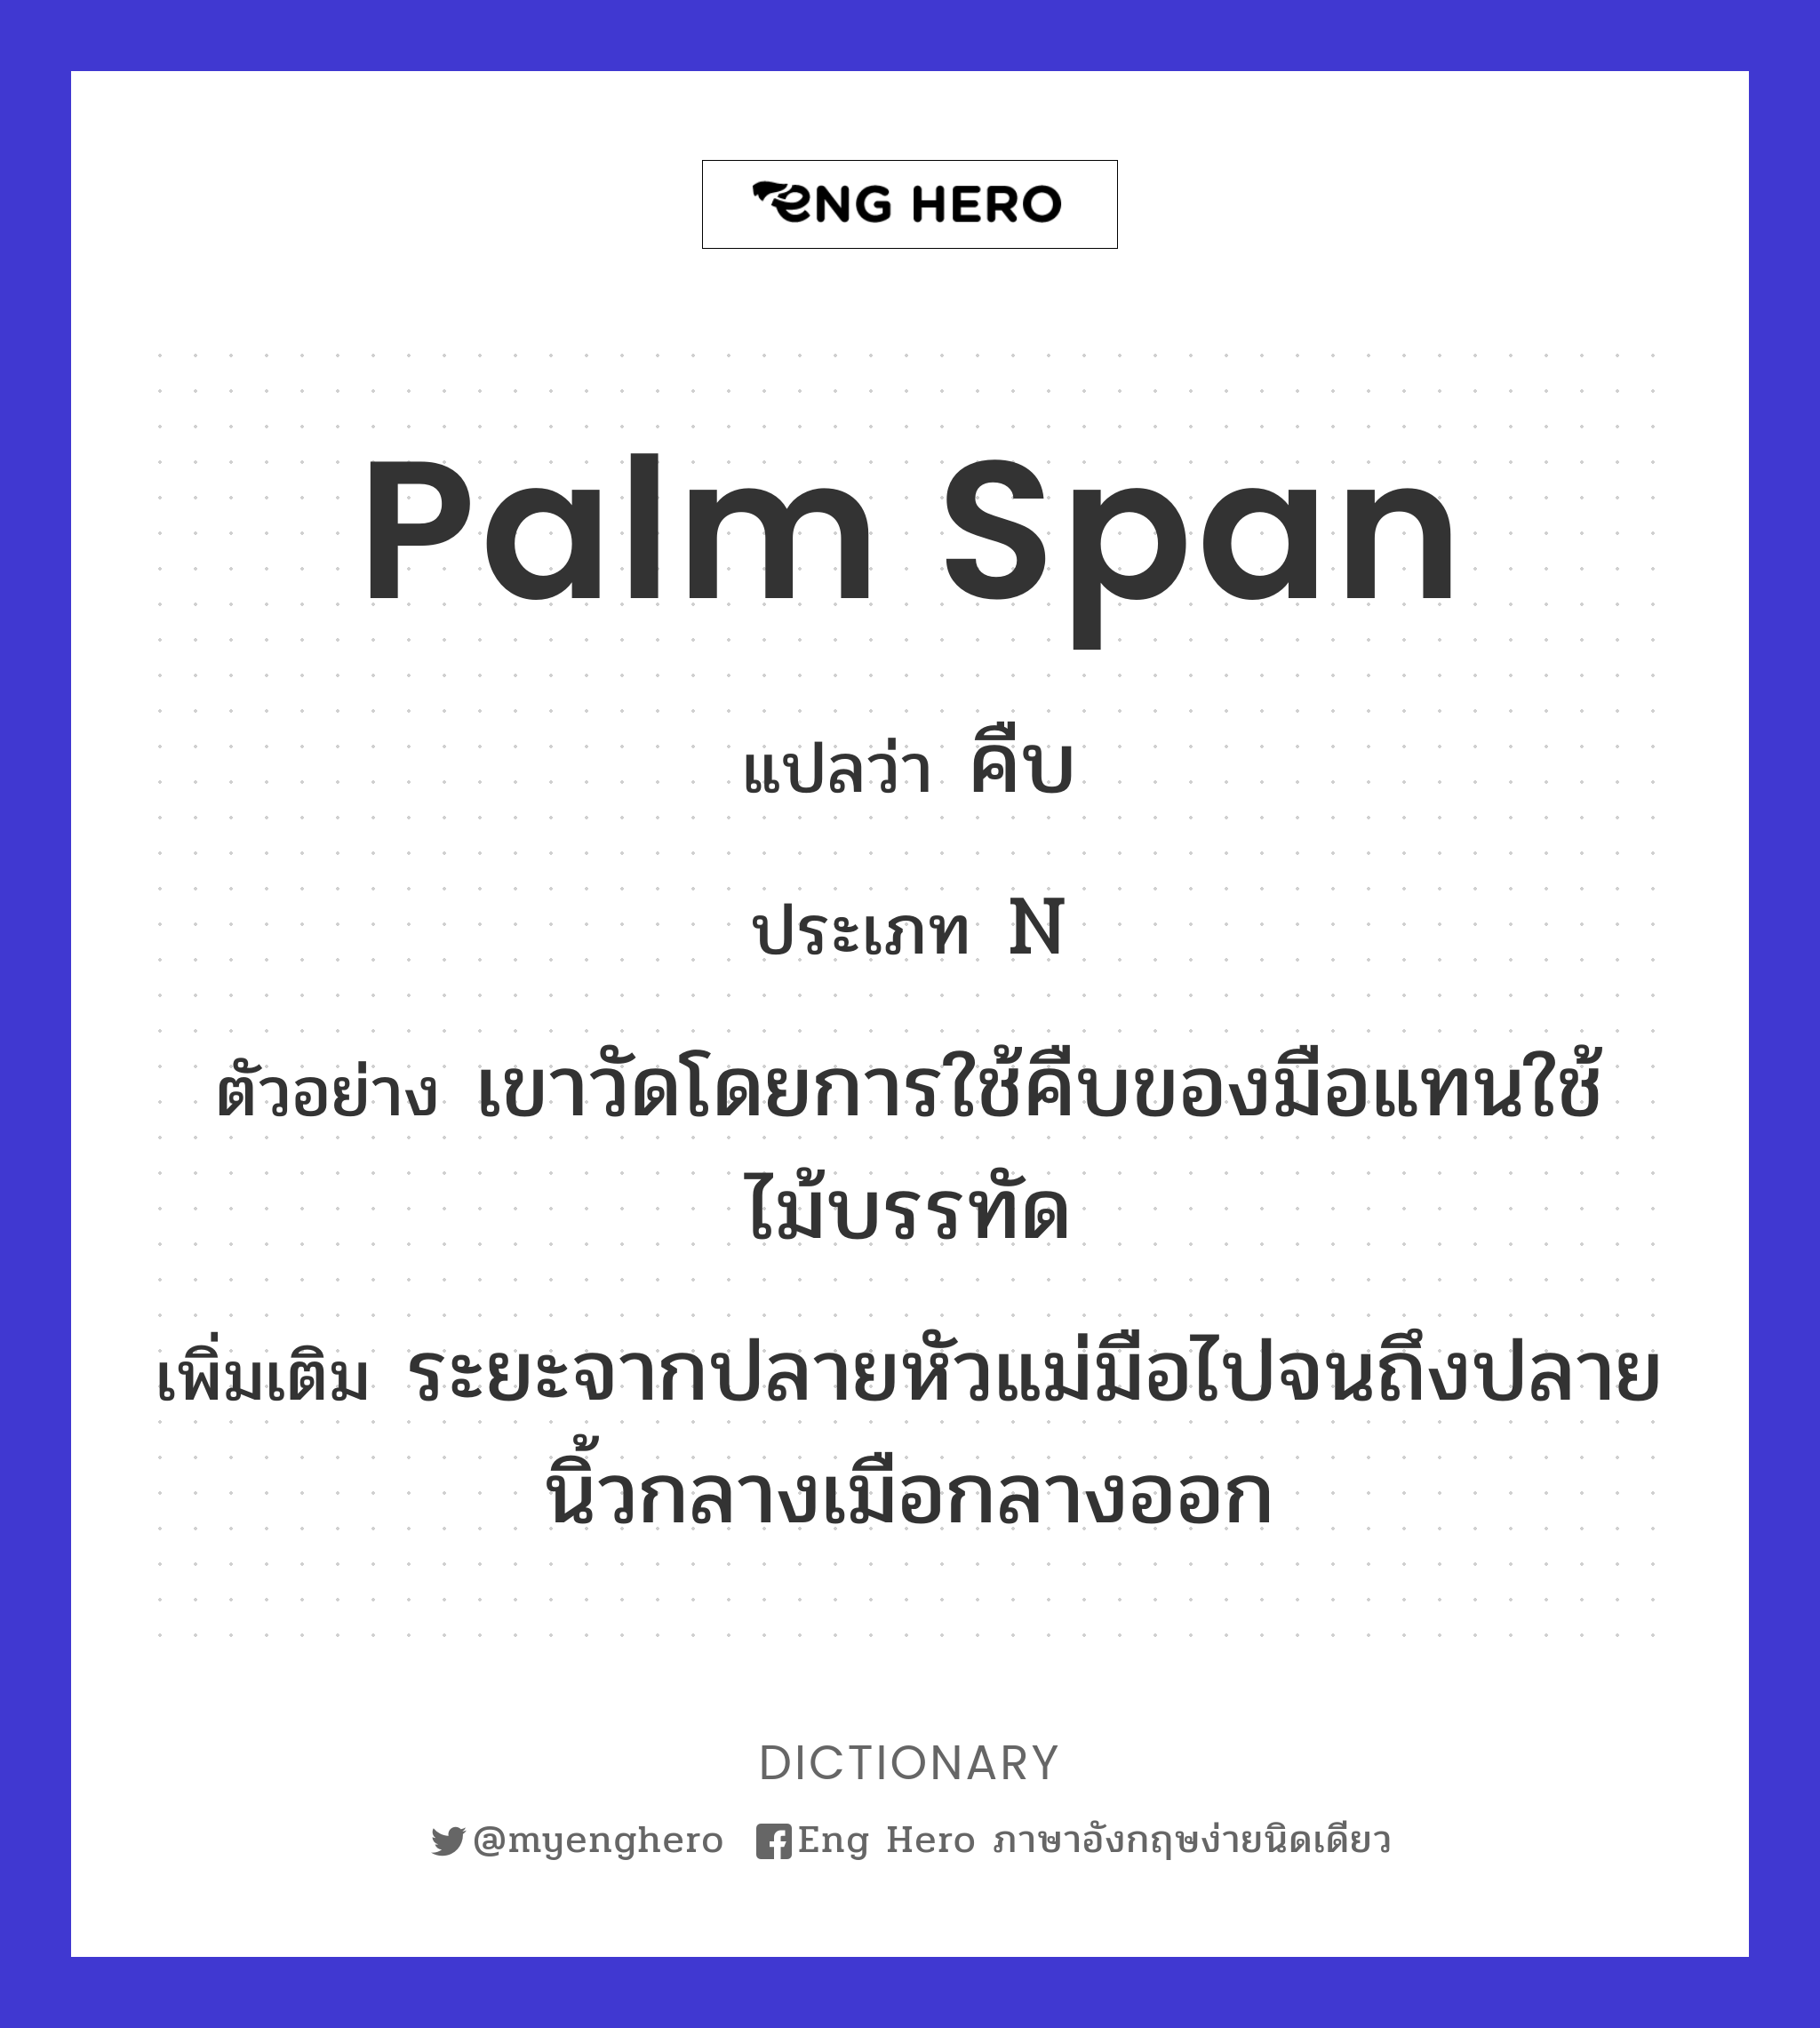 palm span